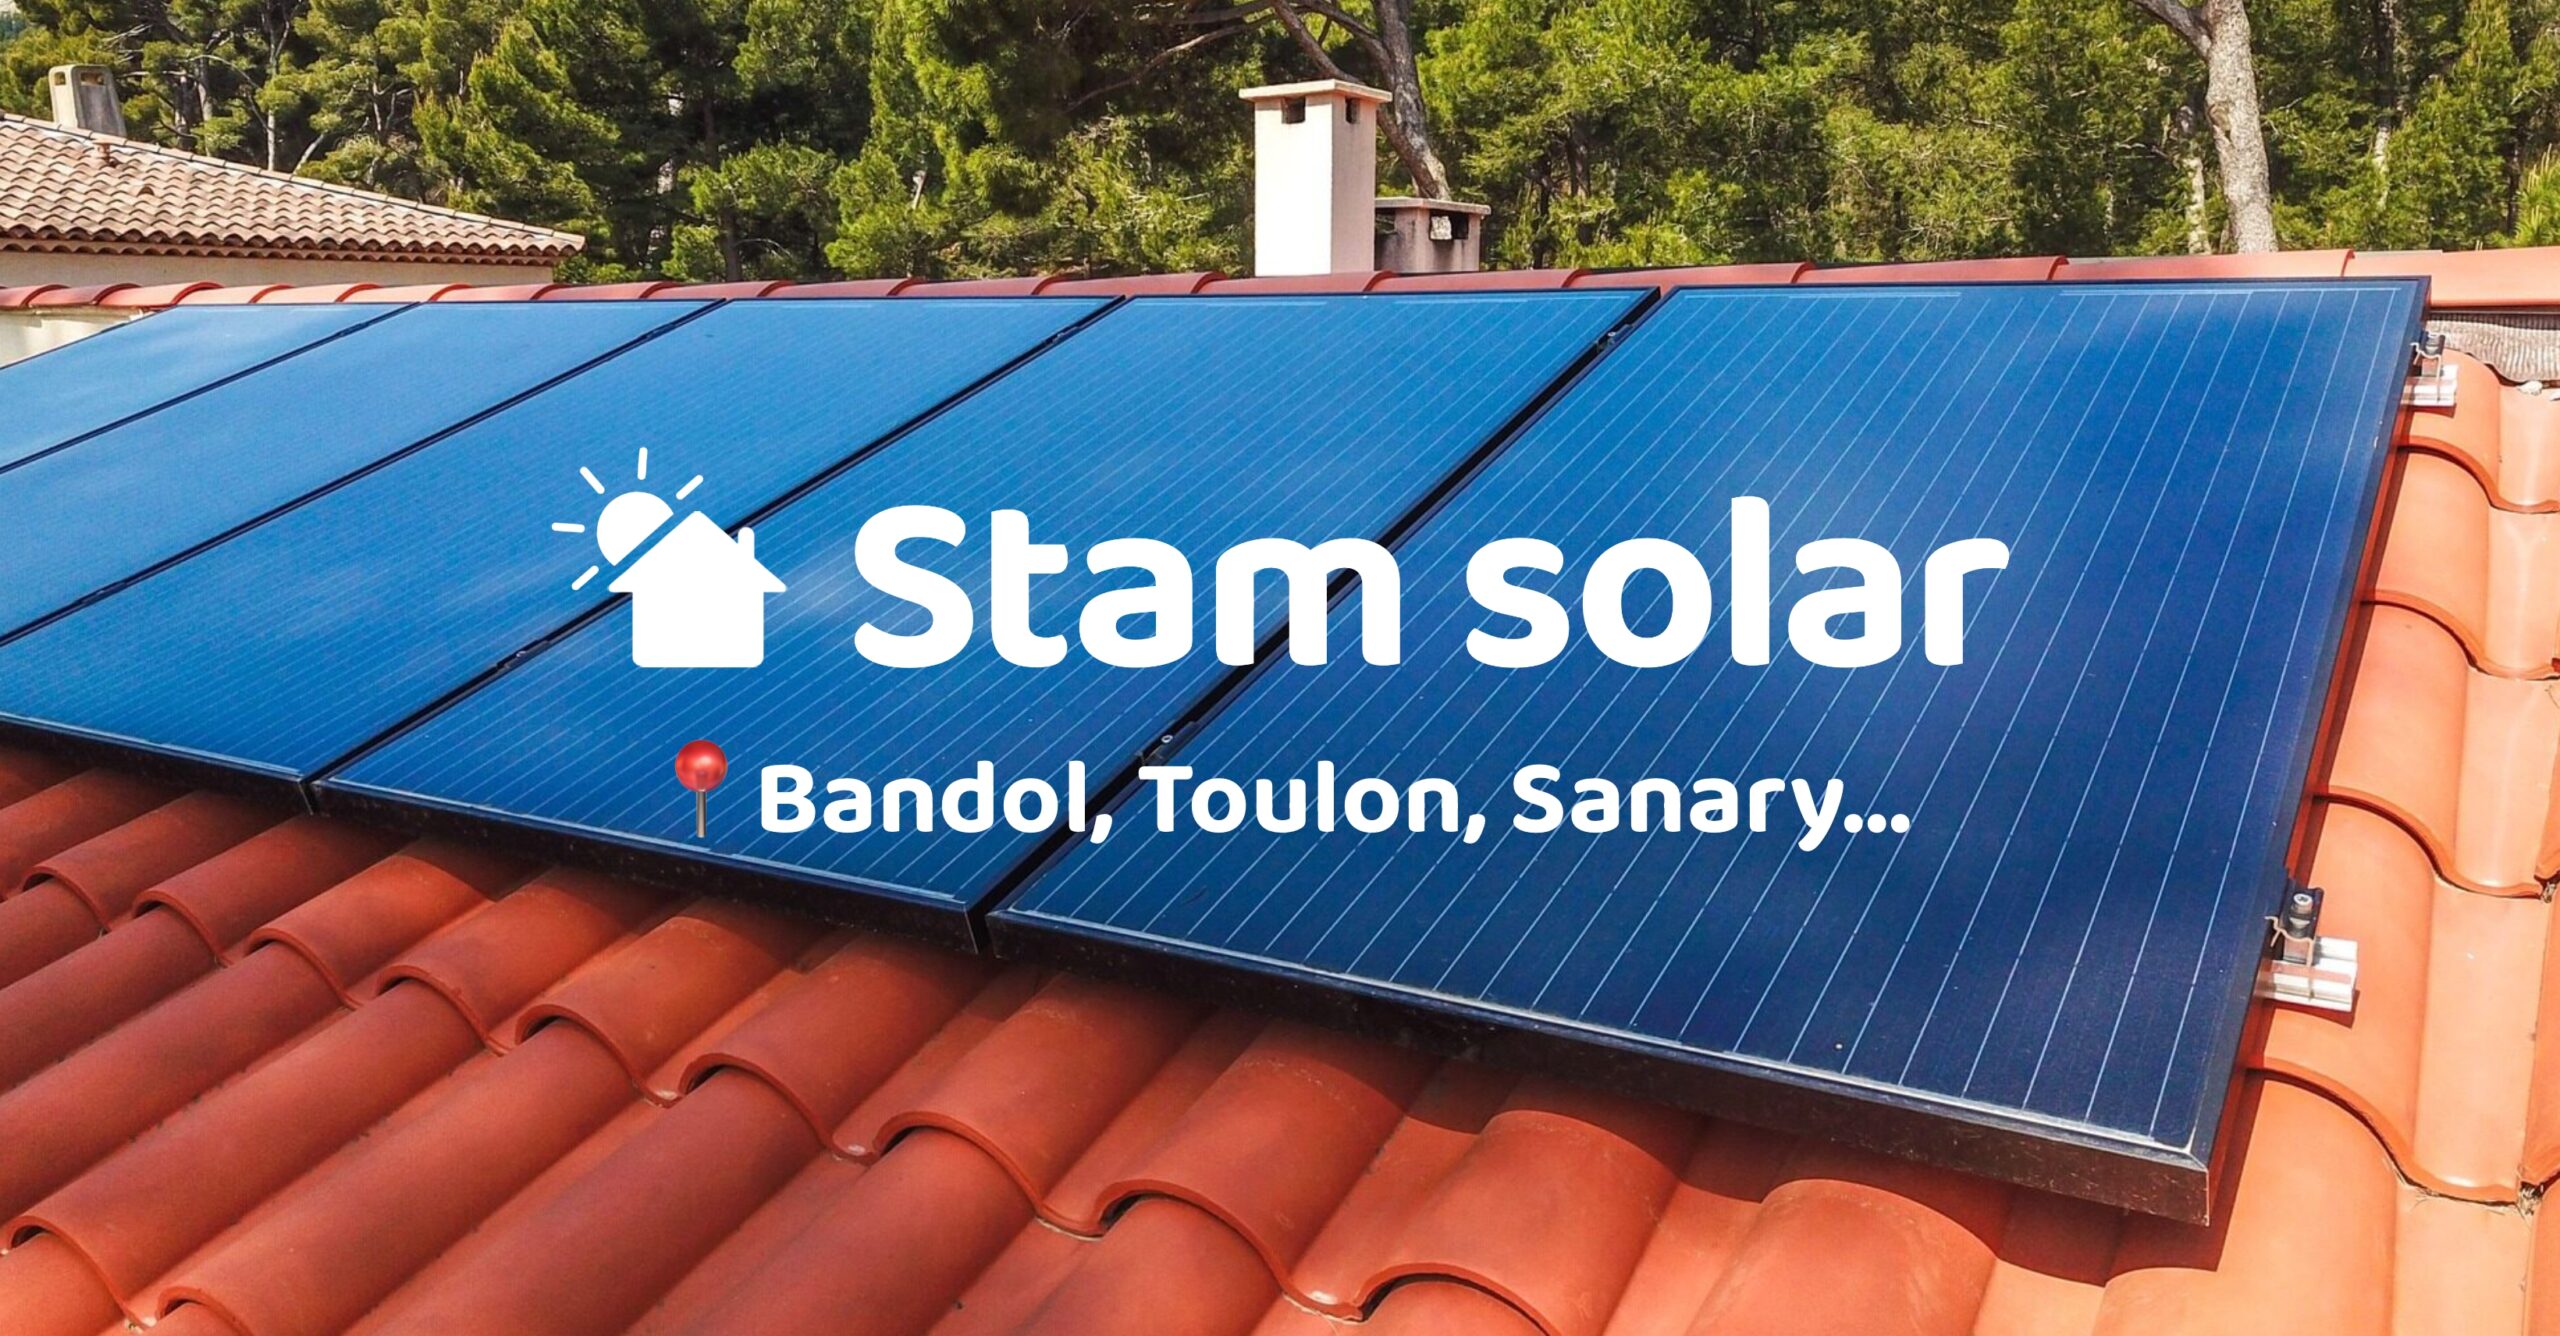 Featured image for “Installateur de panneaux photovoltaïques et bornes de recharge à Carnoux-en-Provence, Bouches-du-Rhône (13)”